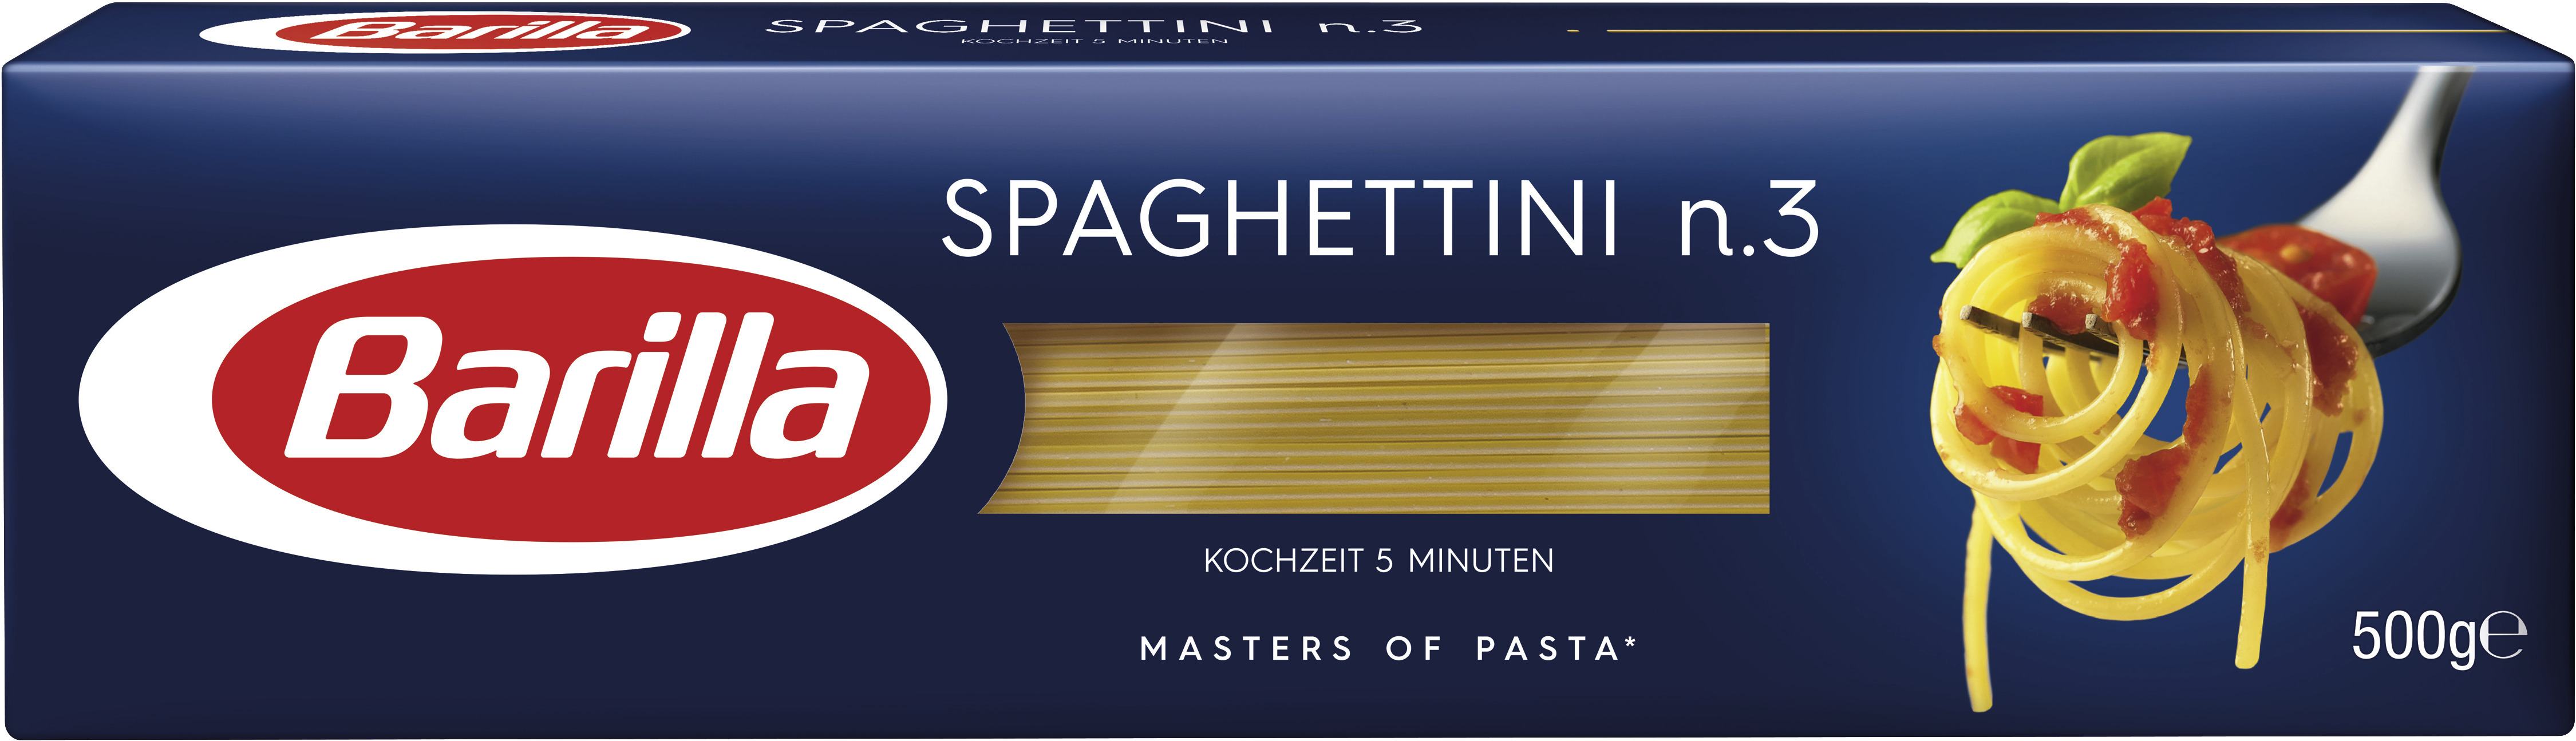 Barilla Pasta Nudeln Spaghettini n.3 500g